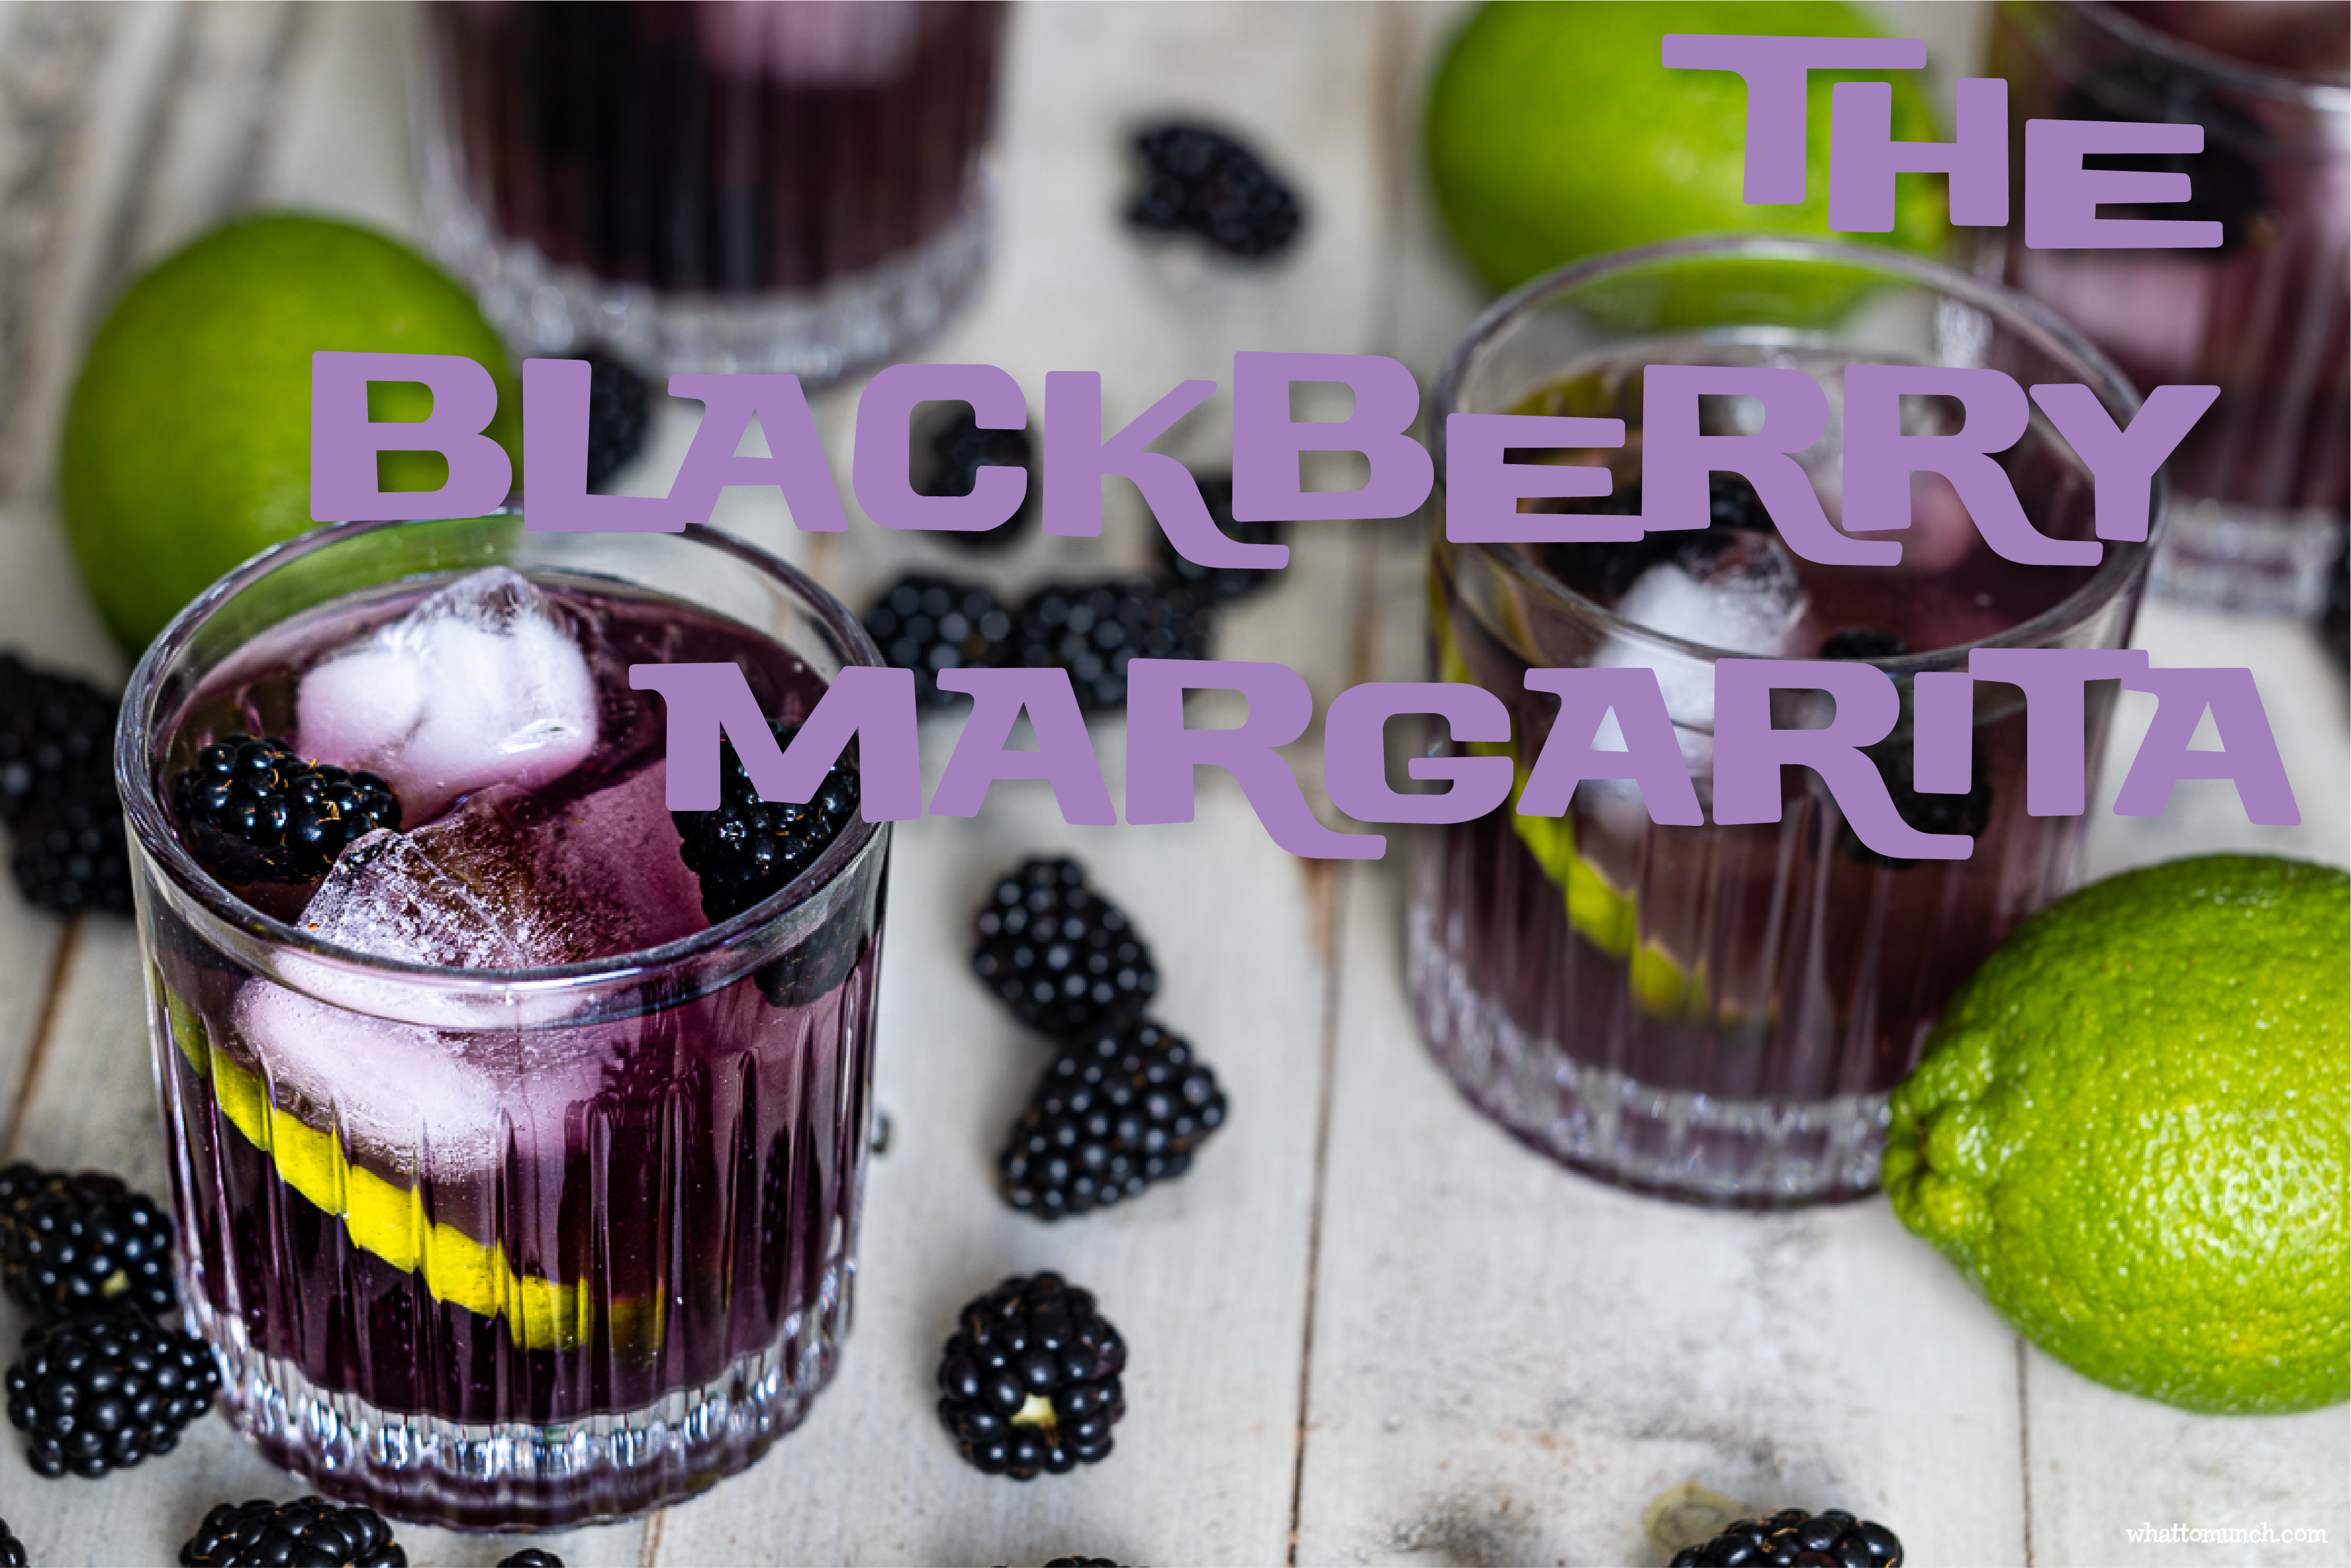 The Blackberry Margarita